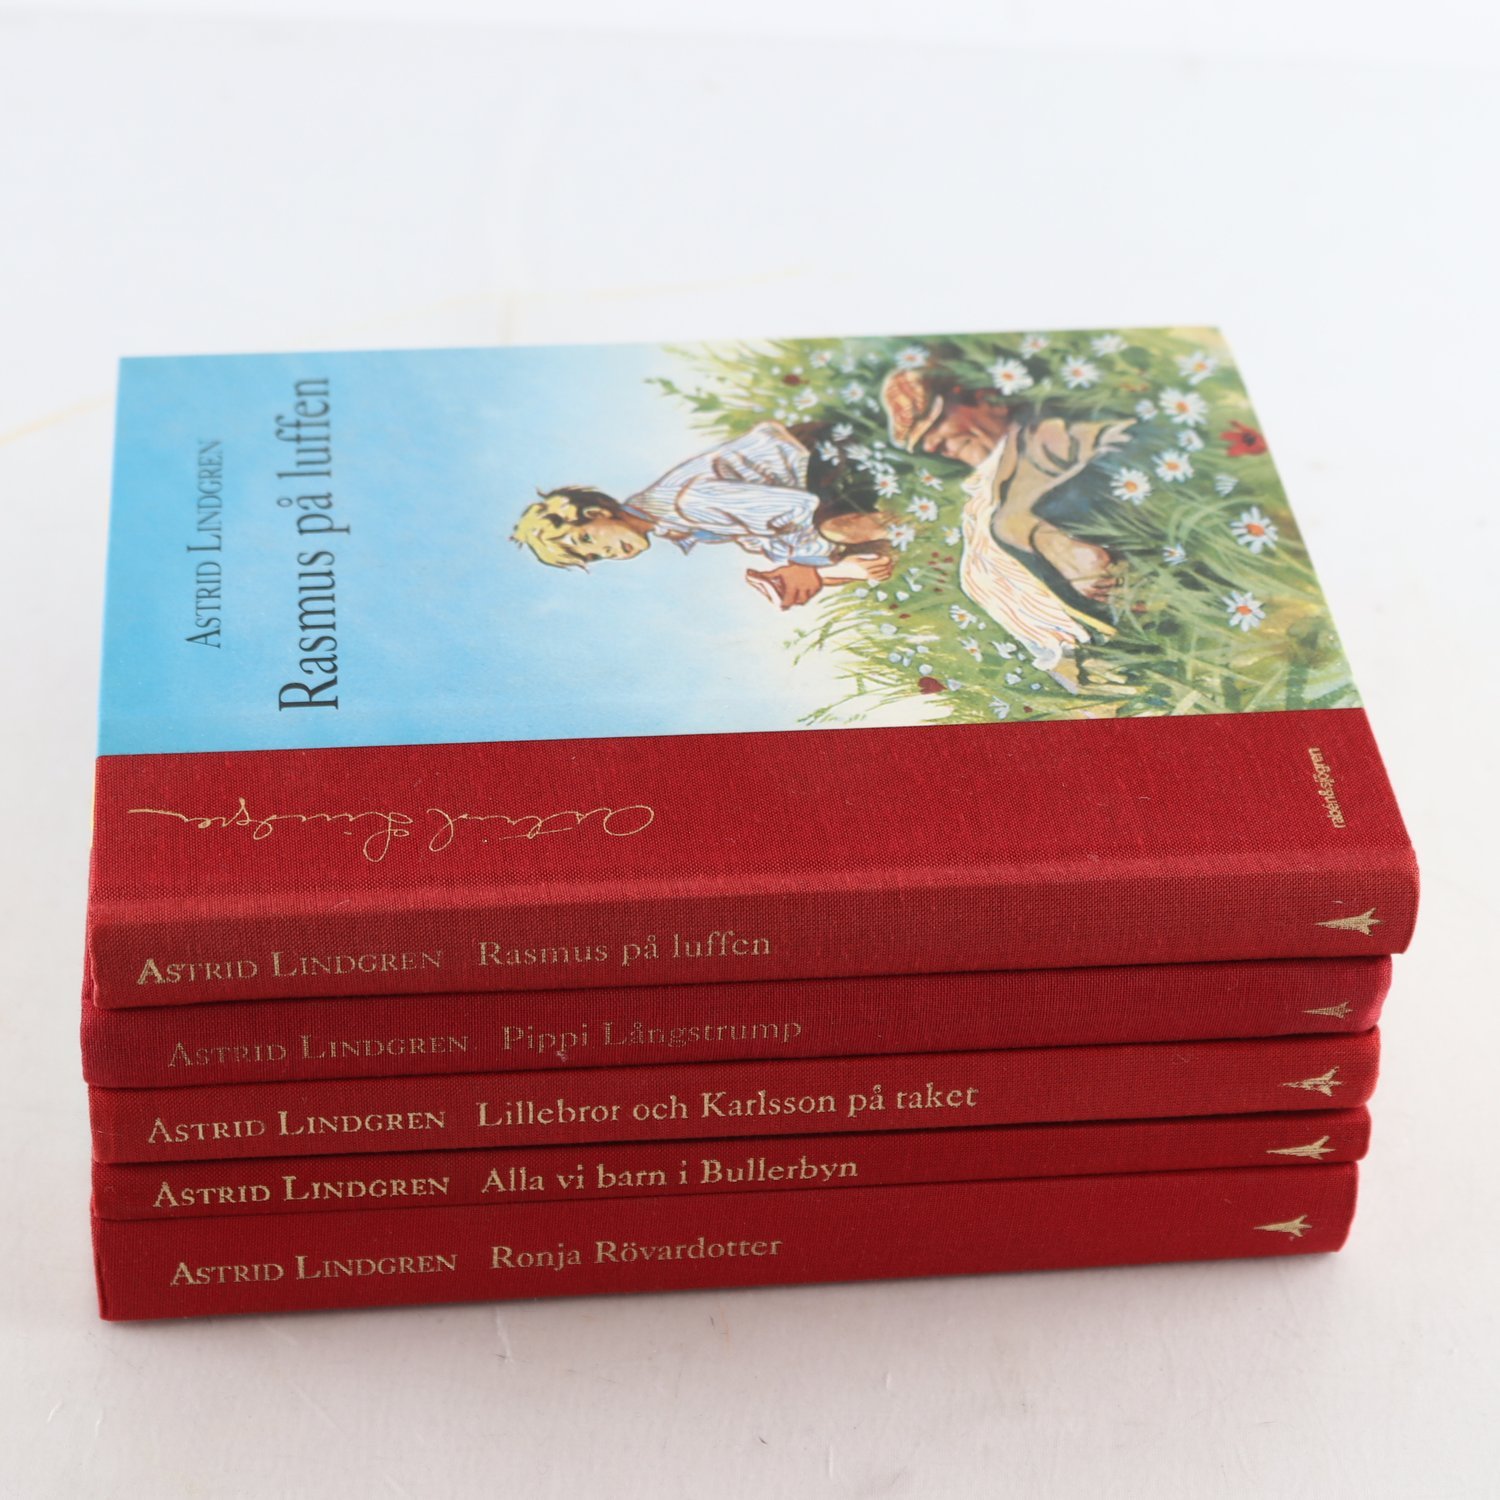 Astrid Lindgren, bokpaket, 5 vol., Pippi Långstrump, Ronja Rövardotter m.m.